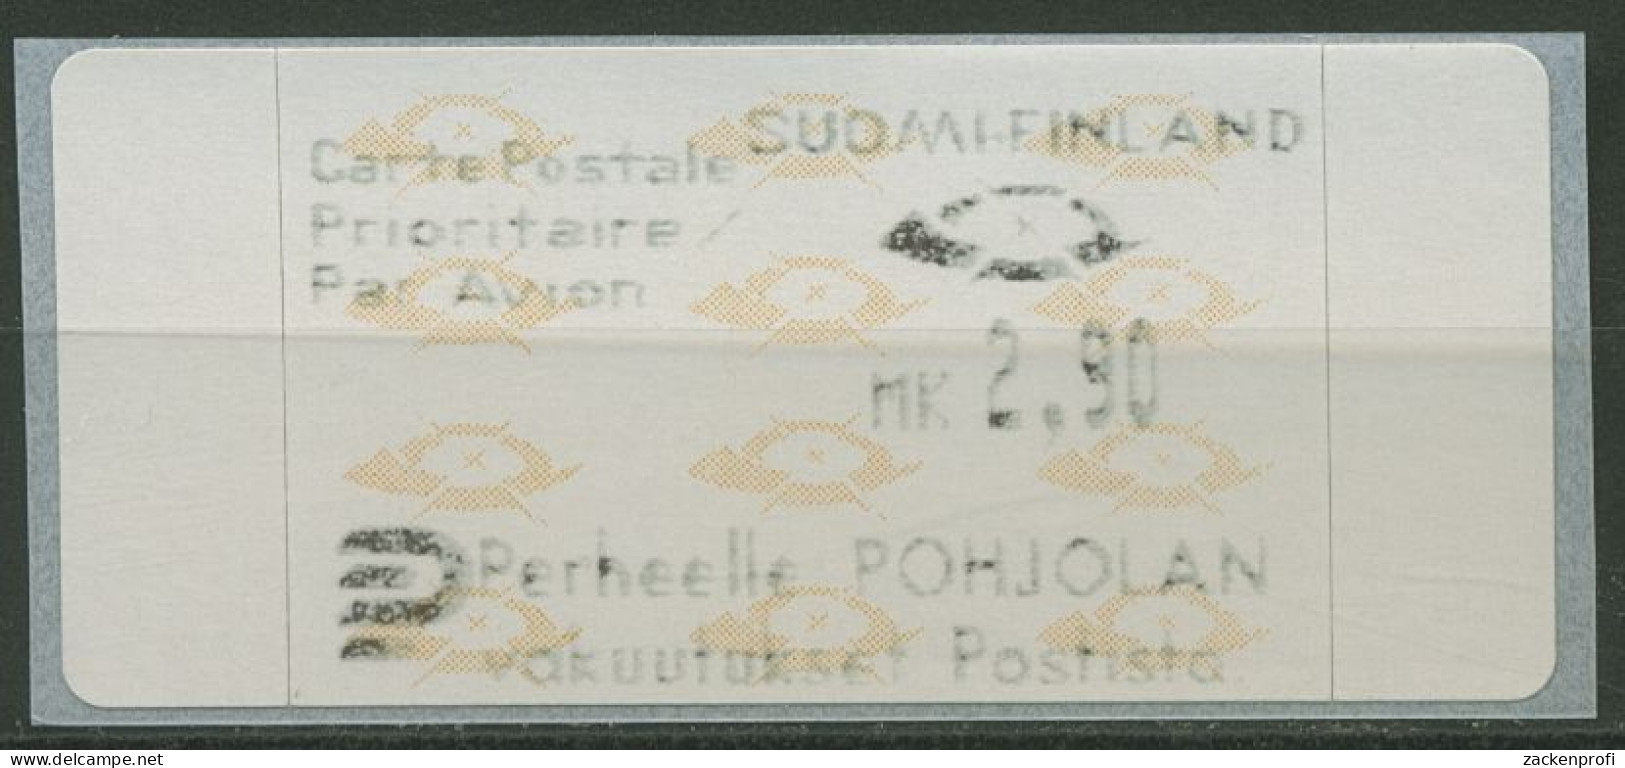 Finnland Automatenmarken 1992 Posthörner Einzelwert ATM 12.3 Z3 Postfrisch - Viñetas De Franqueo [ATM]